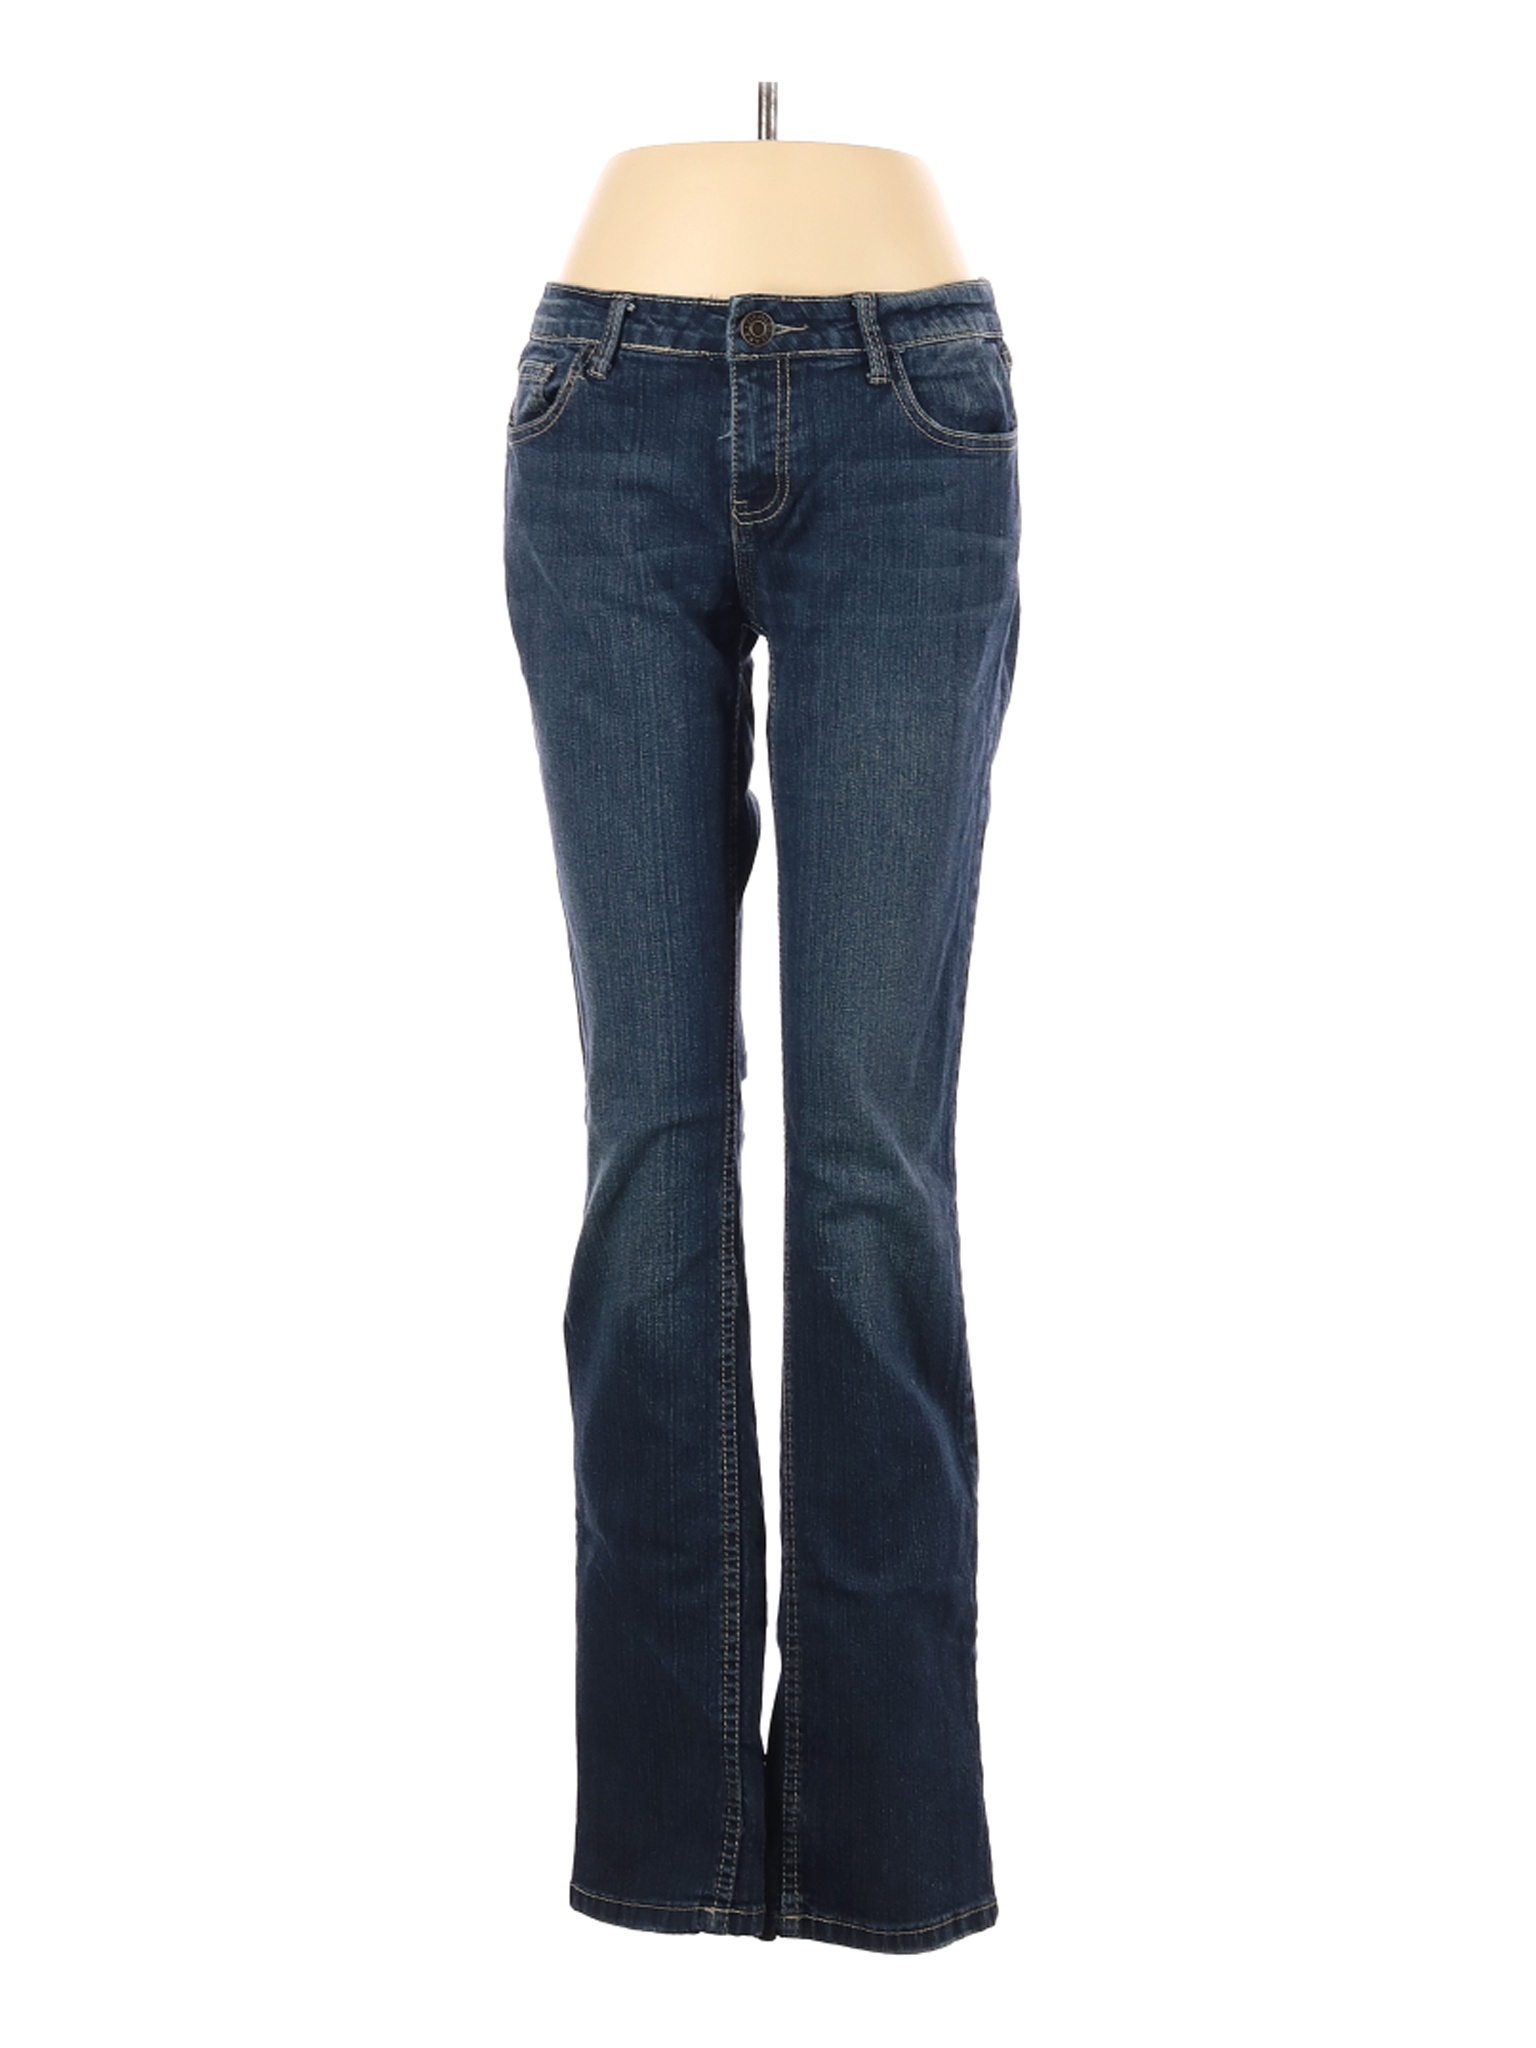 Vigold Women Blue Jeans 29W | eBay